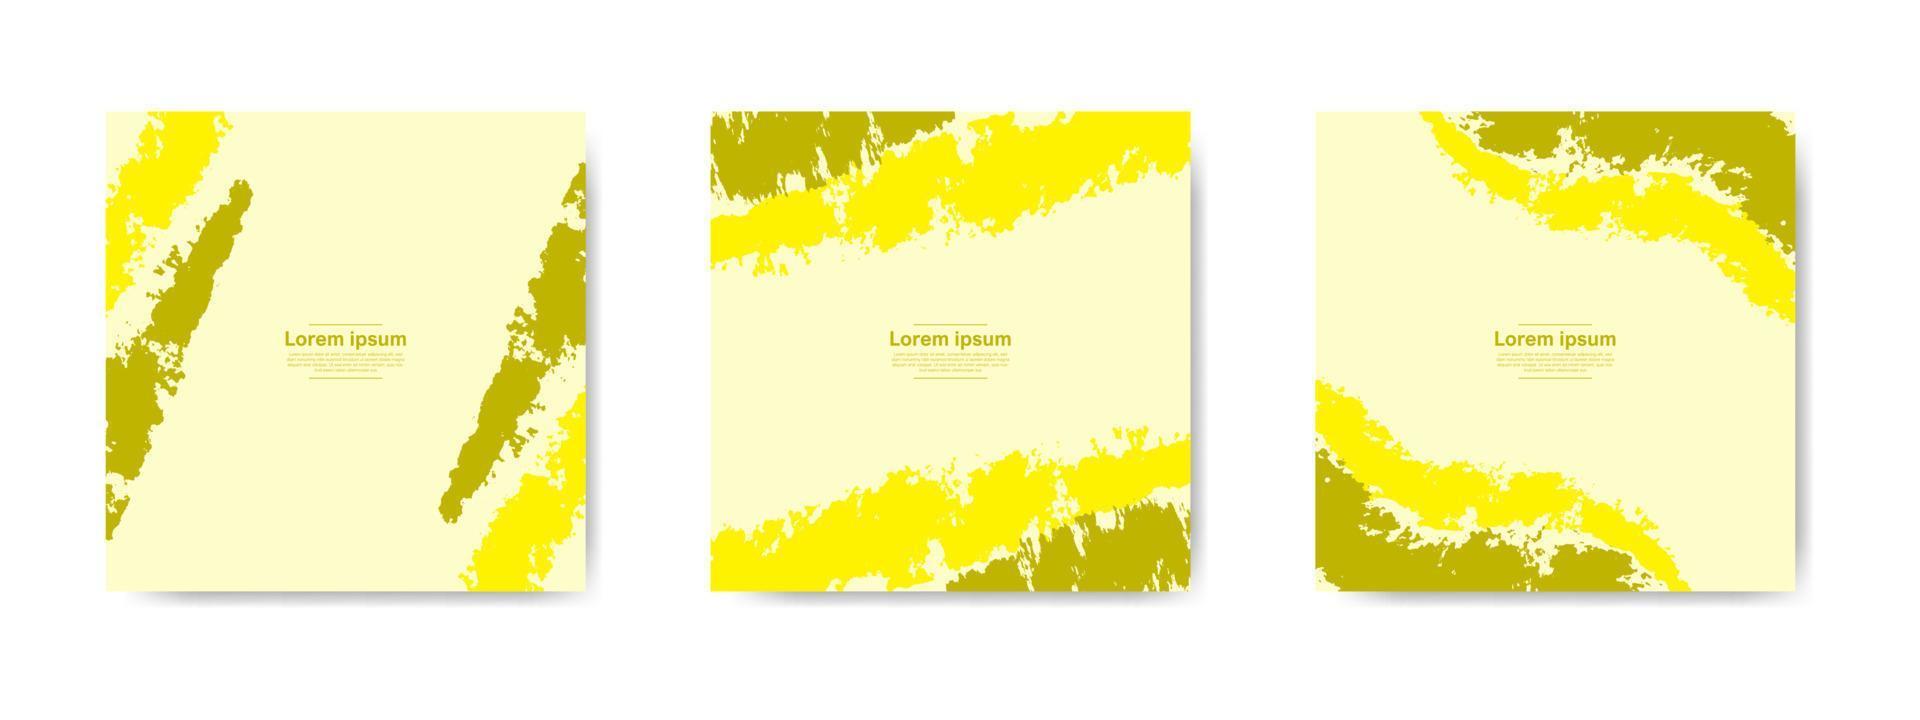 gelbe abstrakte Grunge-Banner-Sammlung für Social-Media-Beiträge und Geschichten vektor